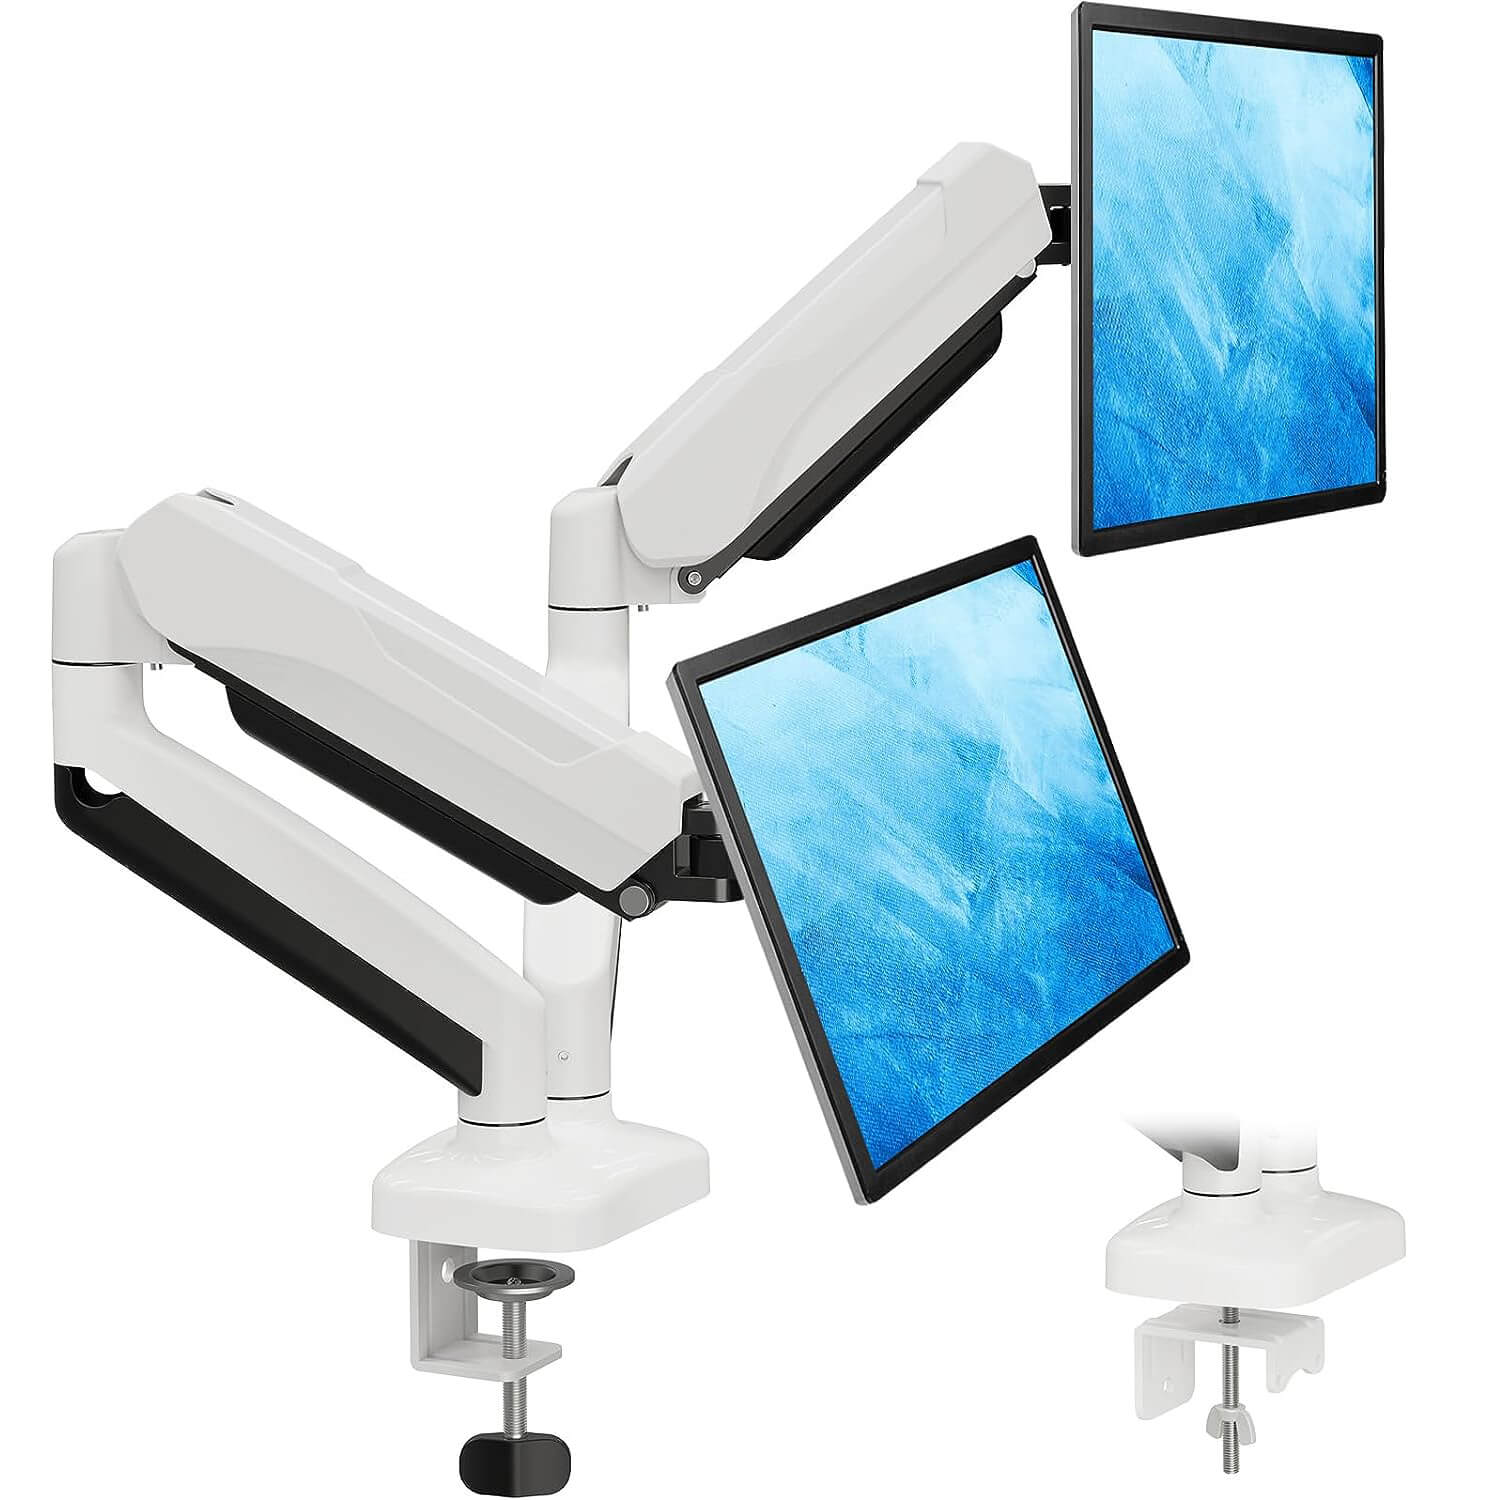 HUANUO Soporte de monitor doble, soportes de monitor de resorte ajustable  en altura para 2 monitores, soporte de escritorio para dos pantallas de